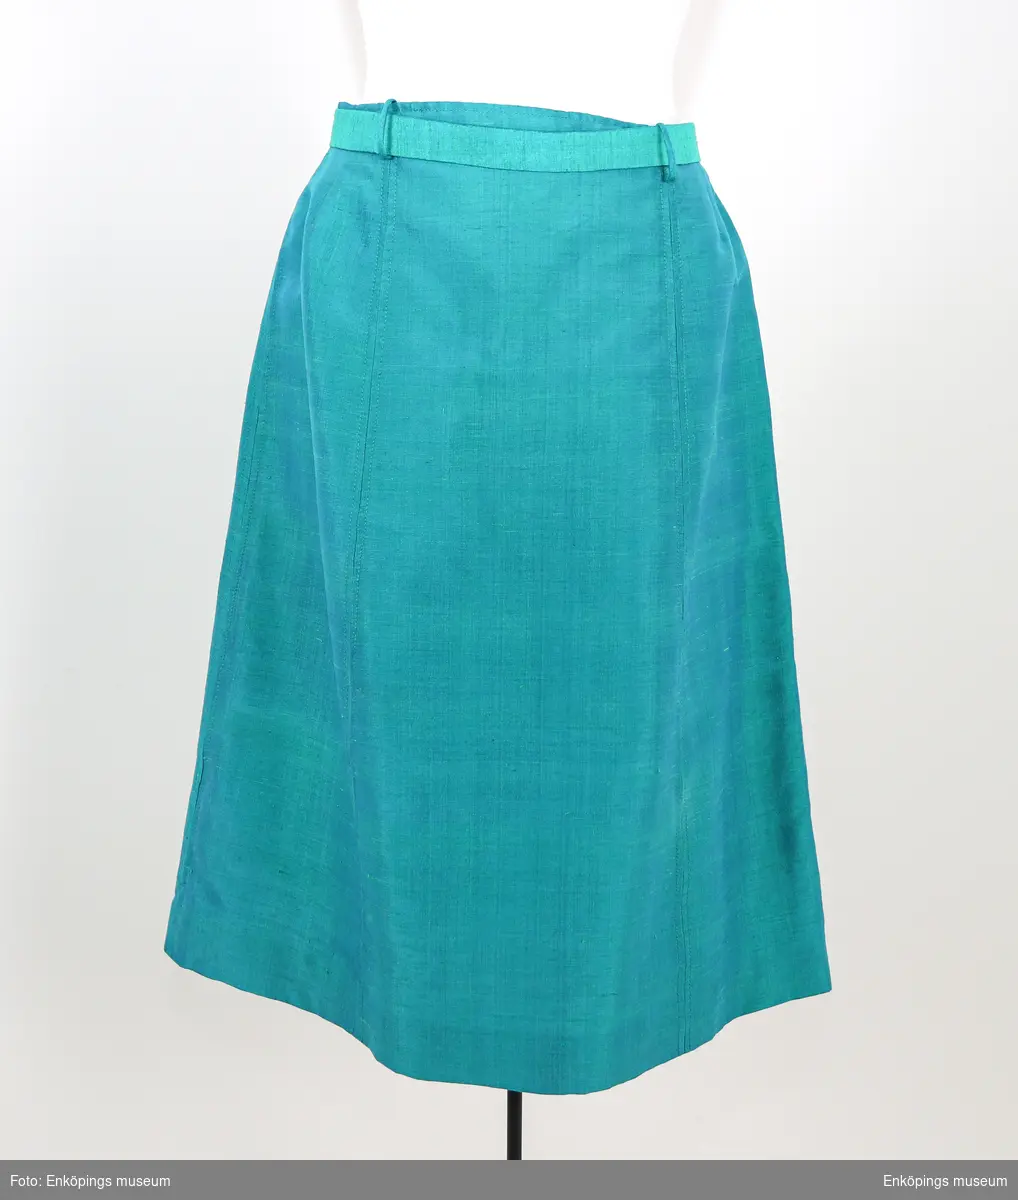 Turkosgrön med blått foder är kjolen och är sydd i sex våder, saknas linning men har ett skärp i tyget. Väska EM7293 är ämnad att bäras till denna dräkt. Enligt givaren en sömmerska i Norrland.